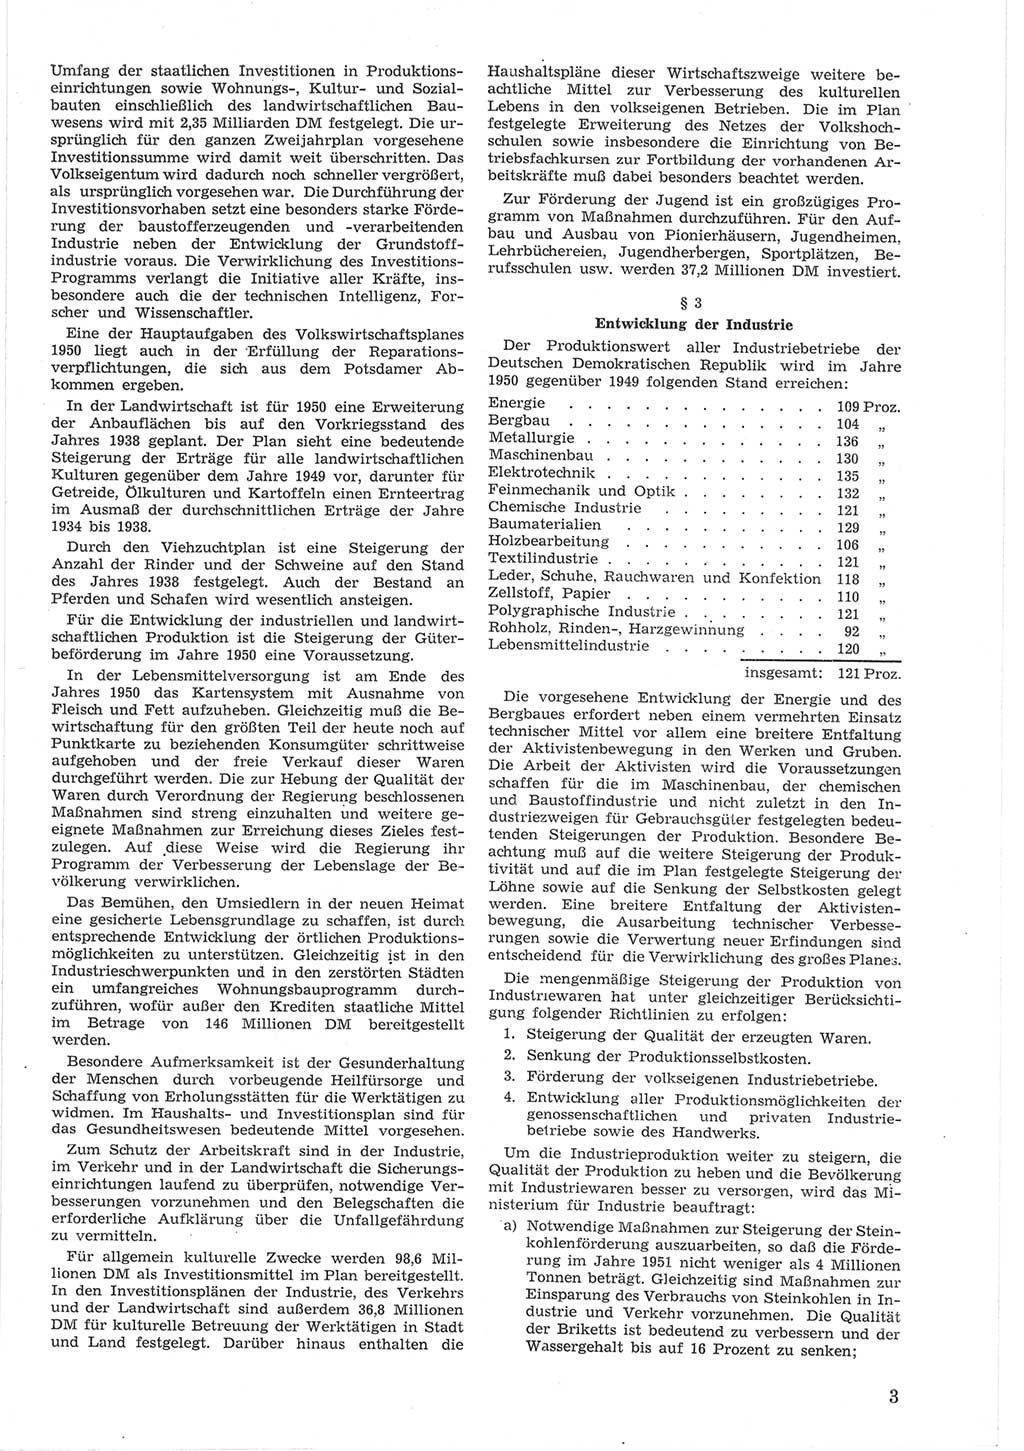 Provisorische Volkskammer (VK) der Deutschen Demokratischen Republik (DDR) 1949-1950, Dokument 603 (Prov. VK DDR 1949-1950, Dok. 603)